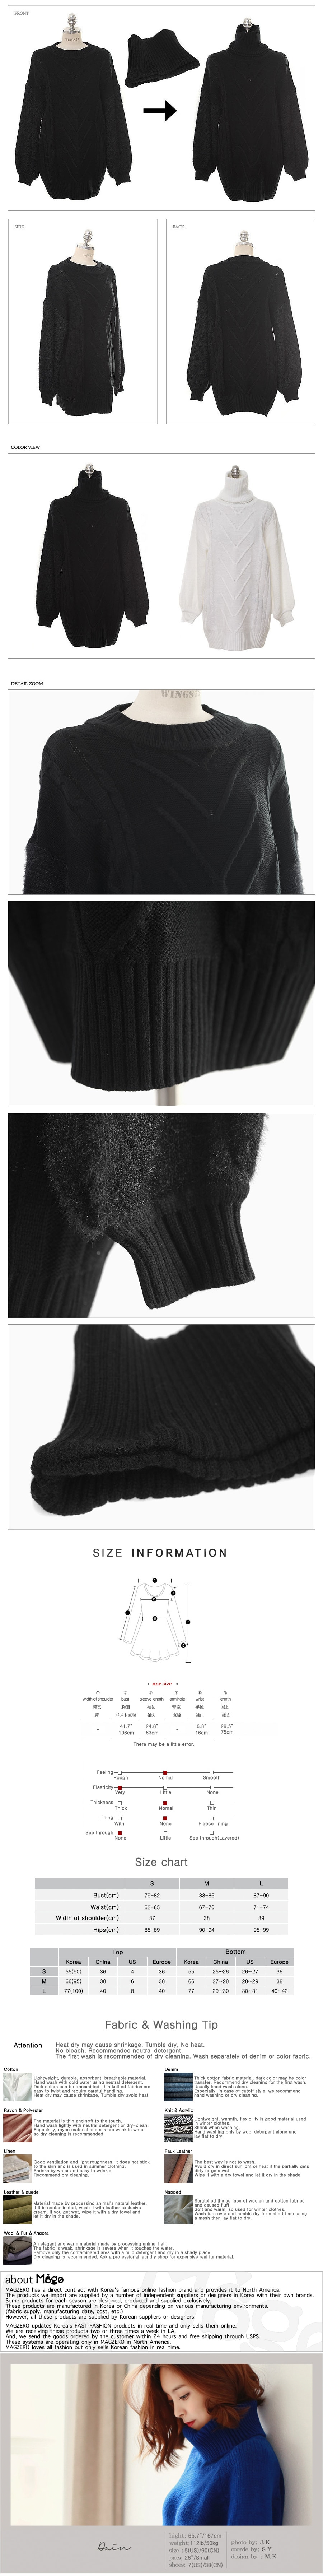 MAGZERO 【限量销售】 混羊毛编织毛衣带围脖 #黑色 均码(S-M)